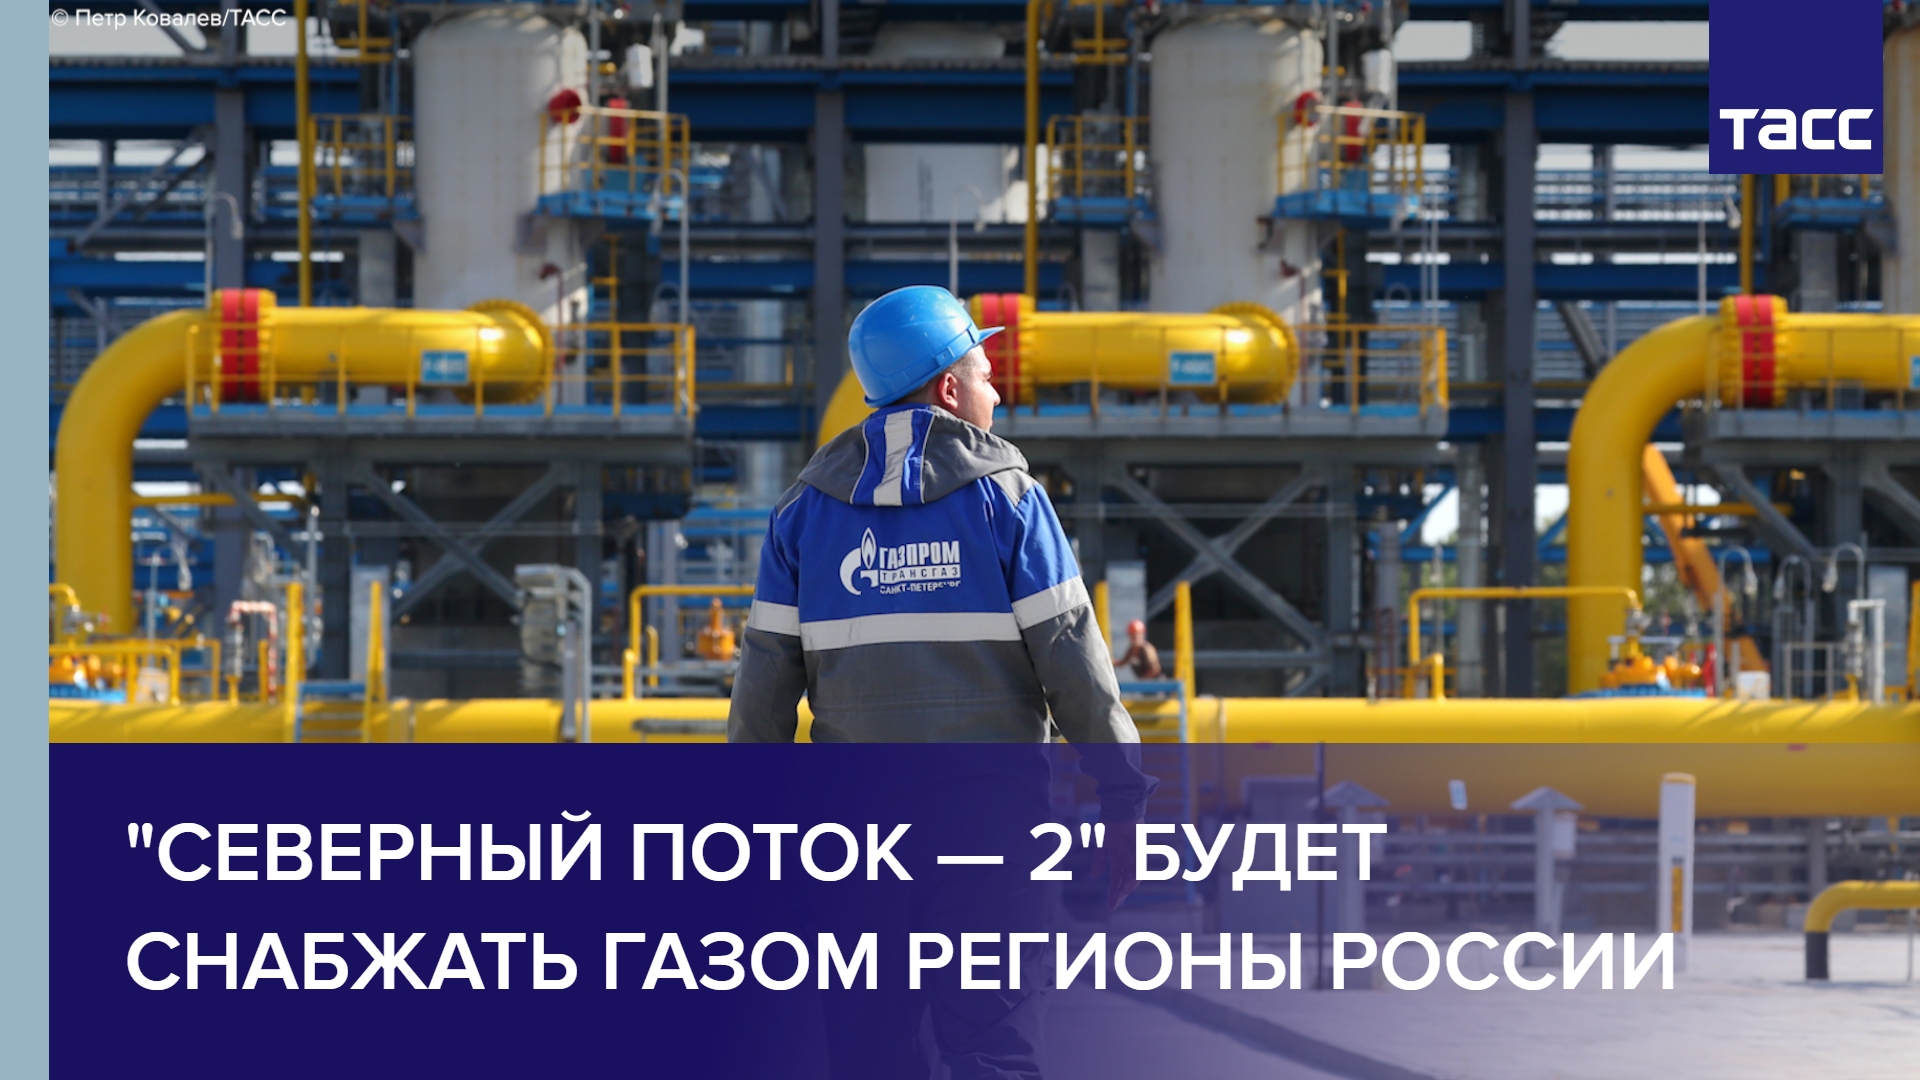 "Северный поток — 2" будет снабжать газом регионы России